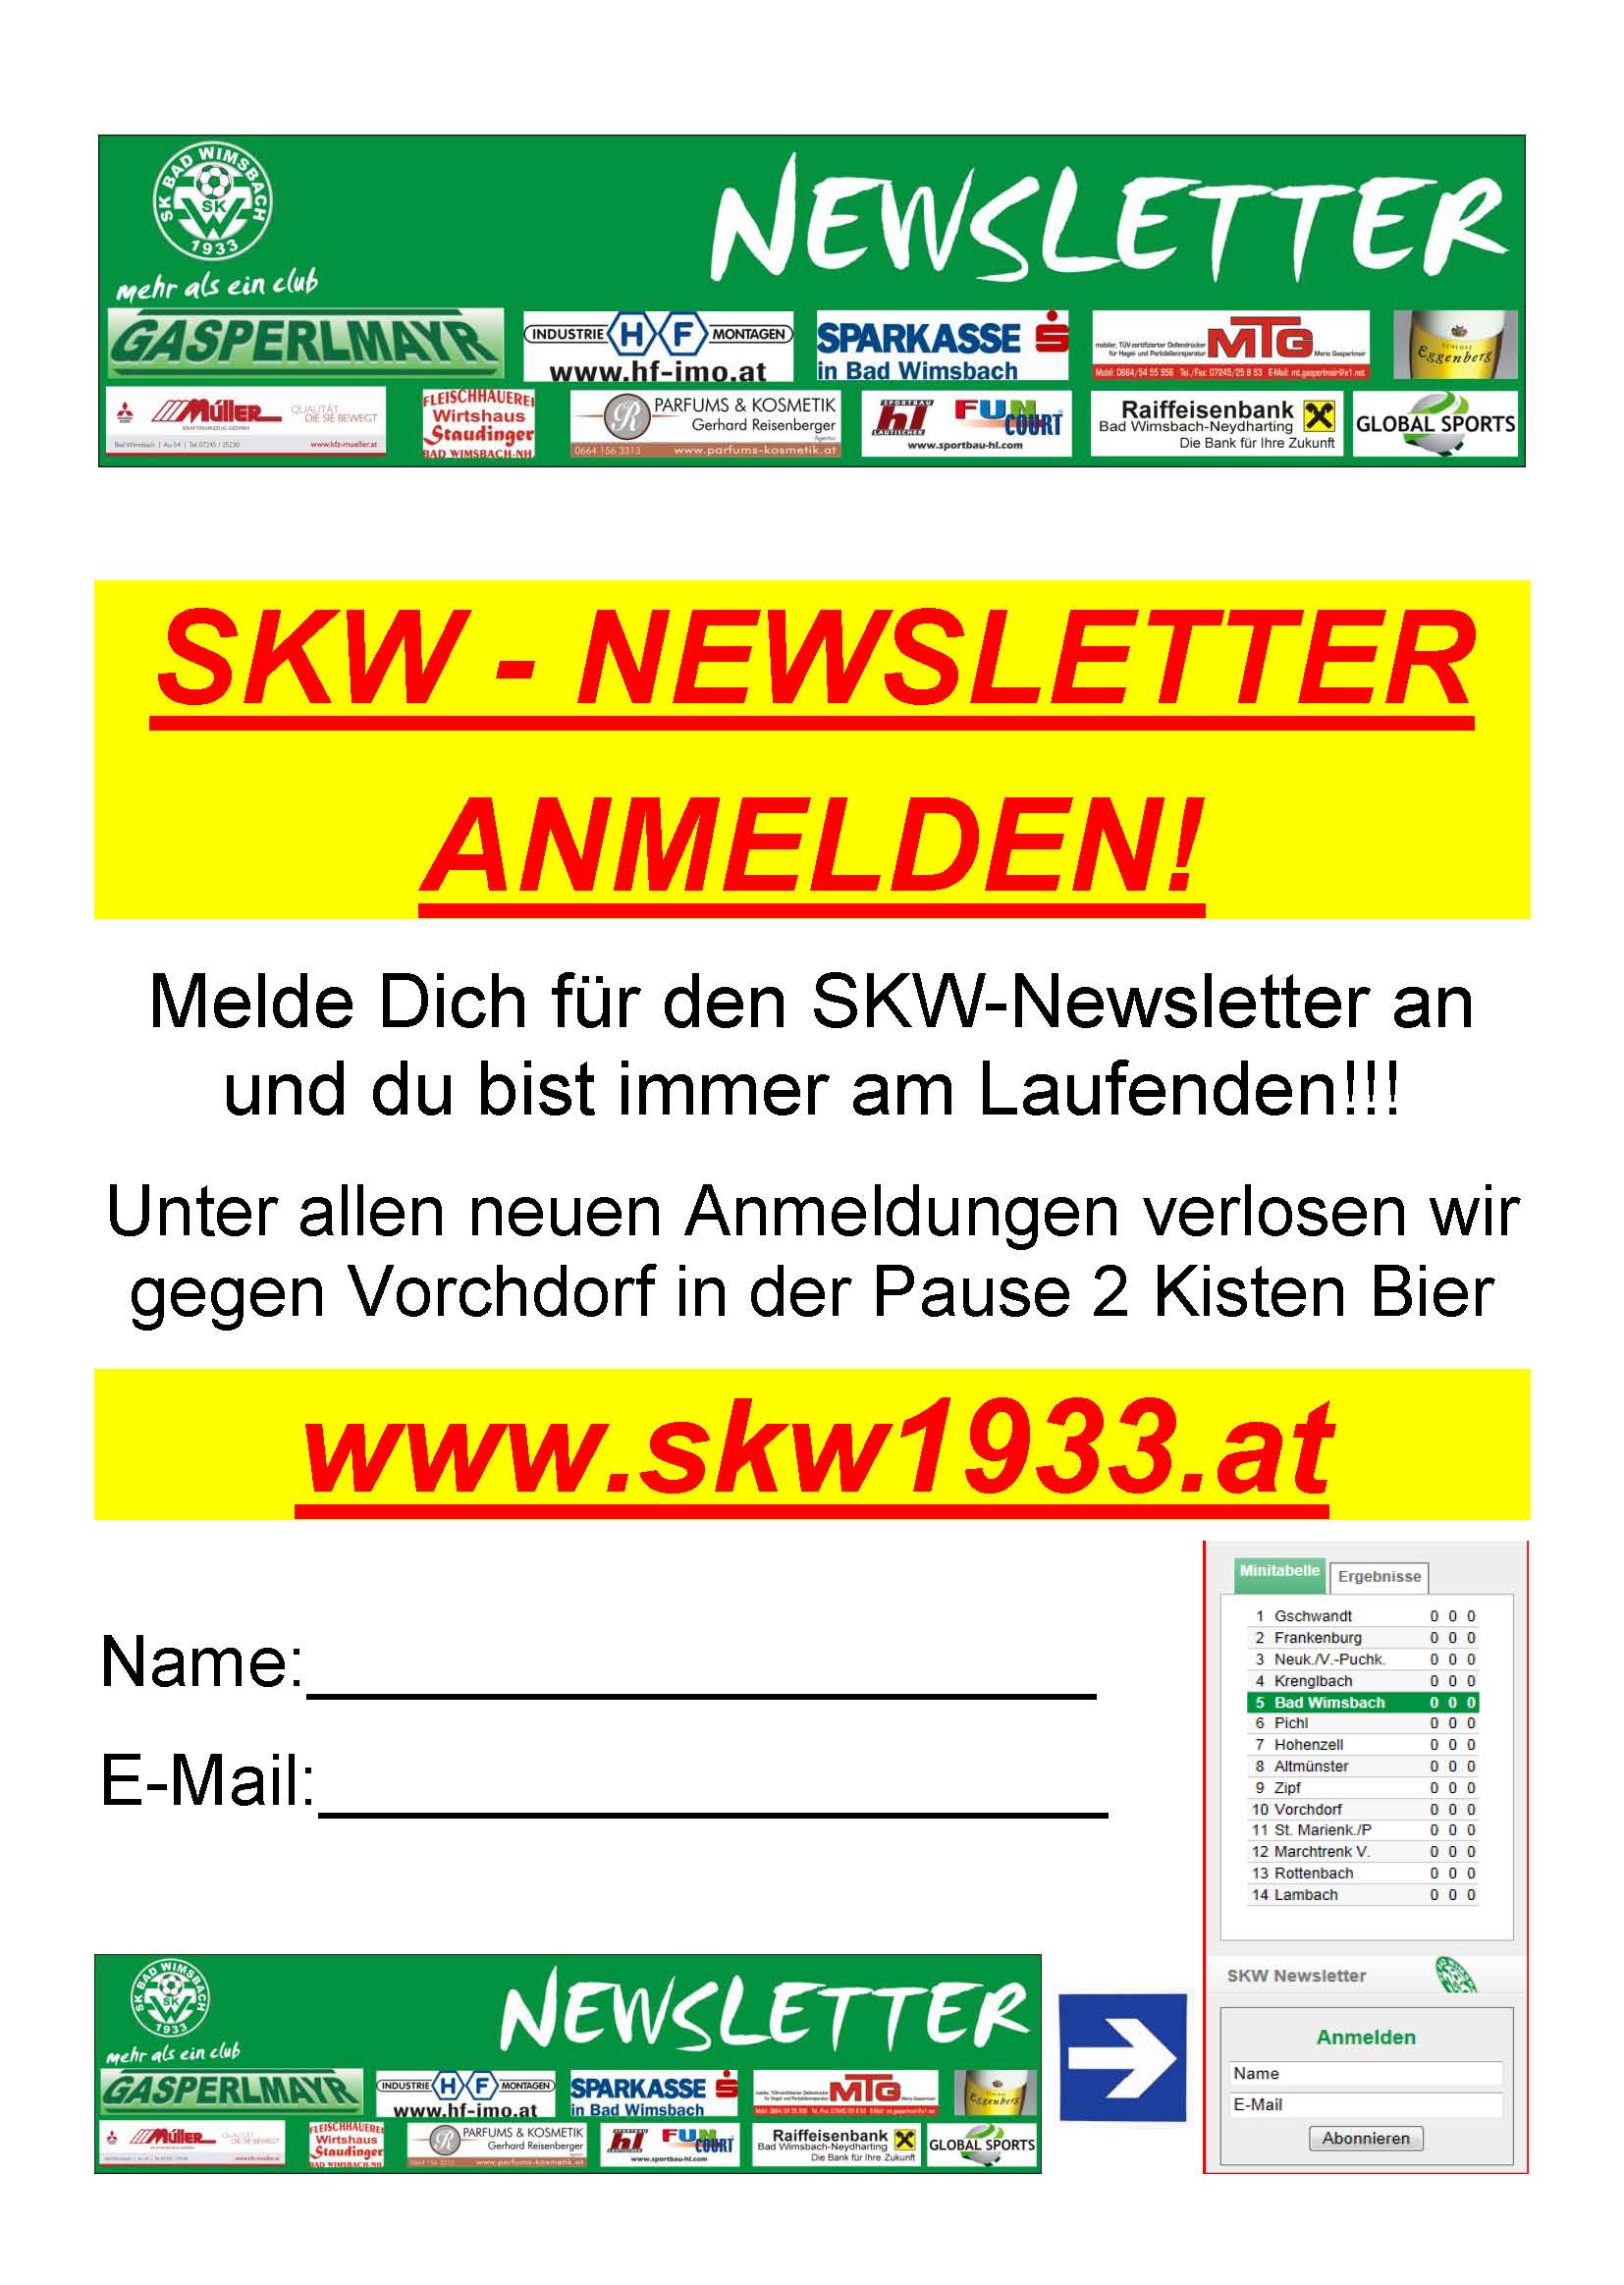 Newsletter_Ankuender